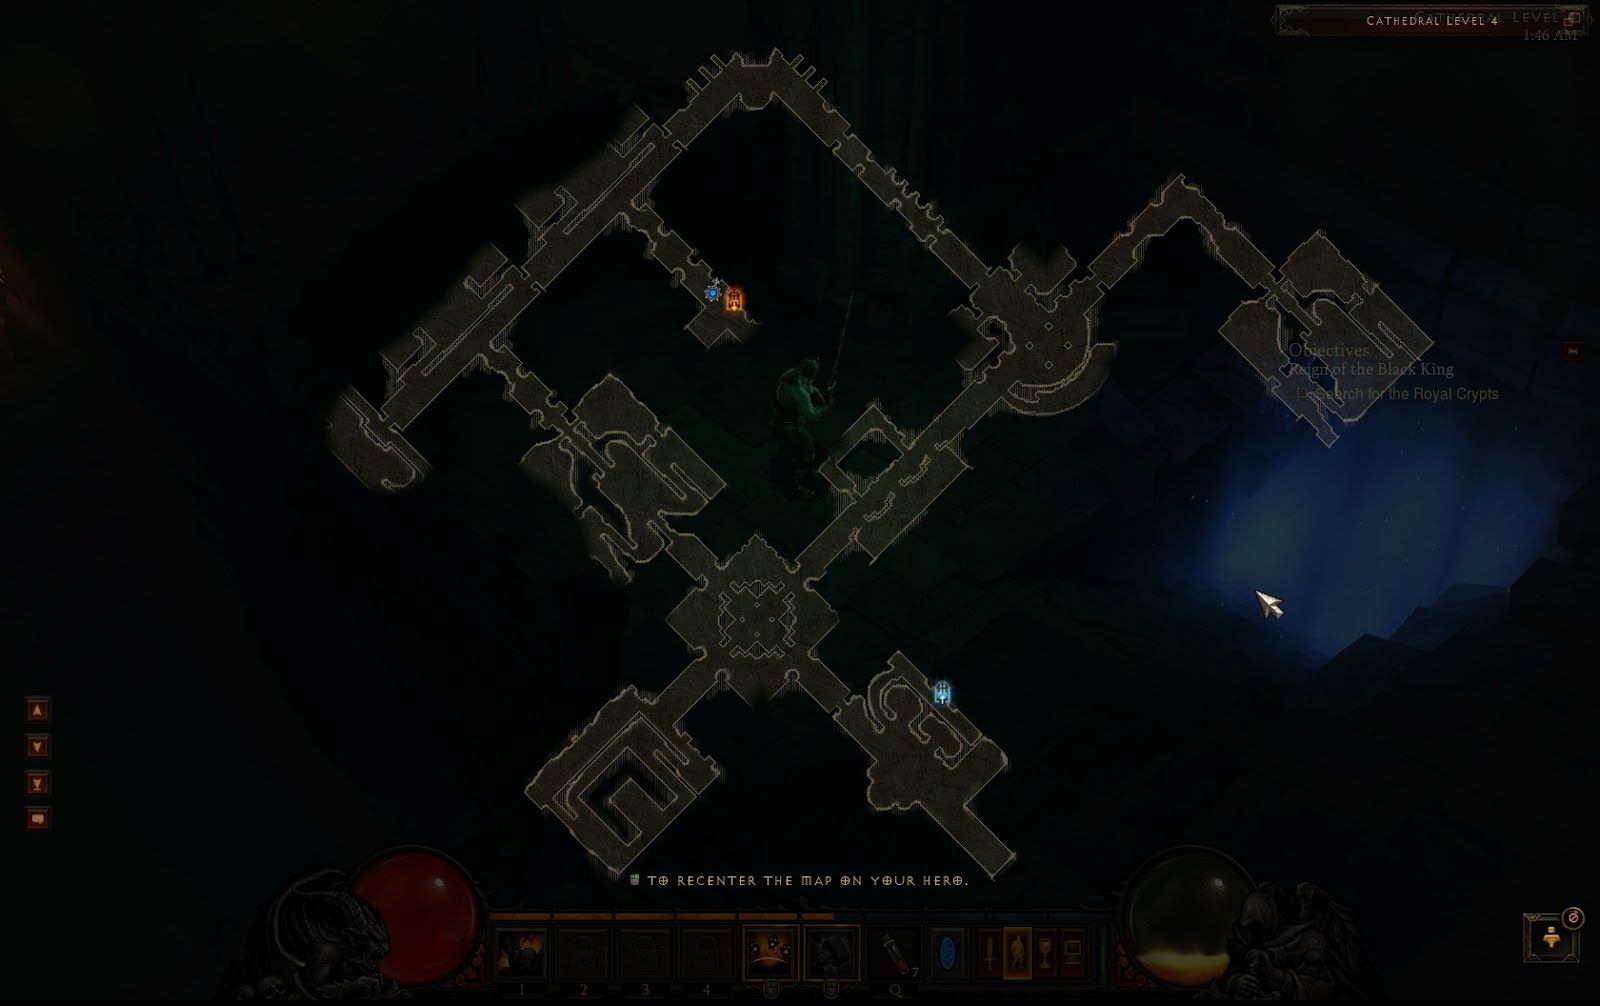 Royal Crypts location in Diablo 3 - Diablo Guides